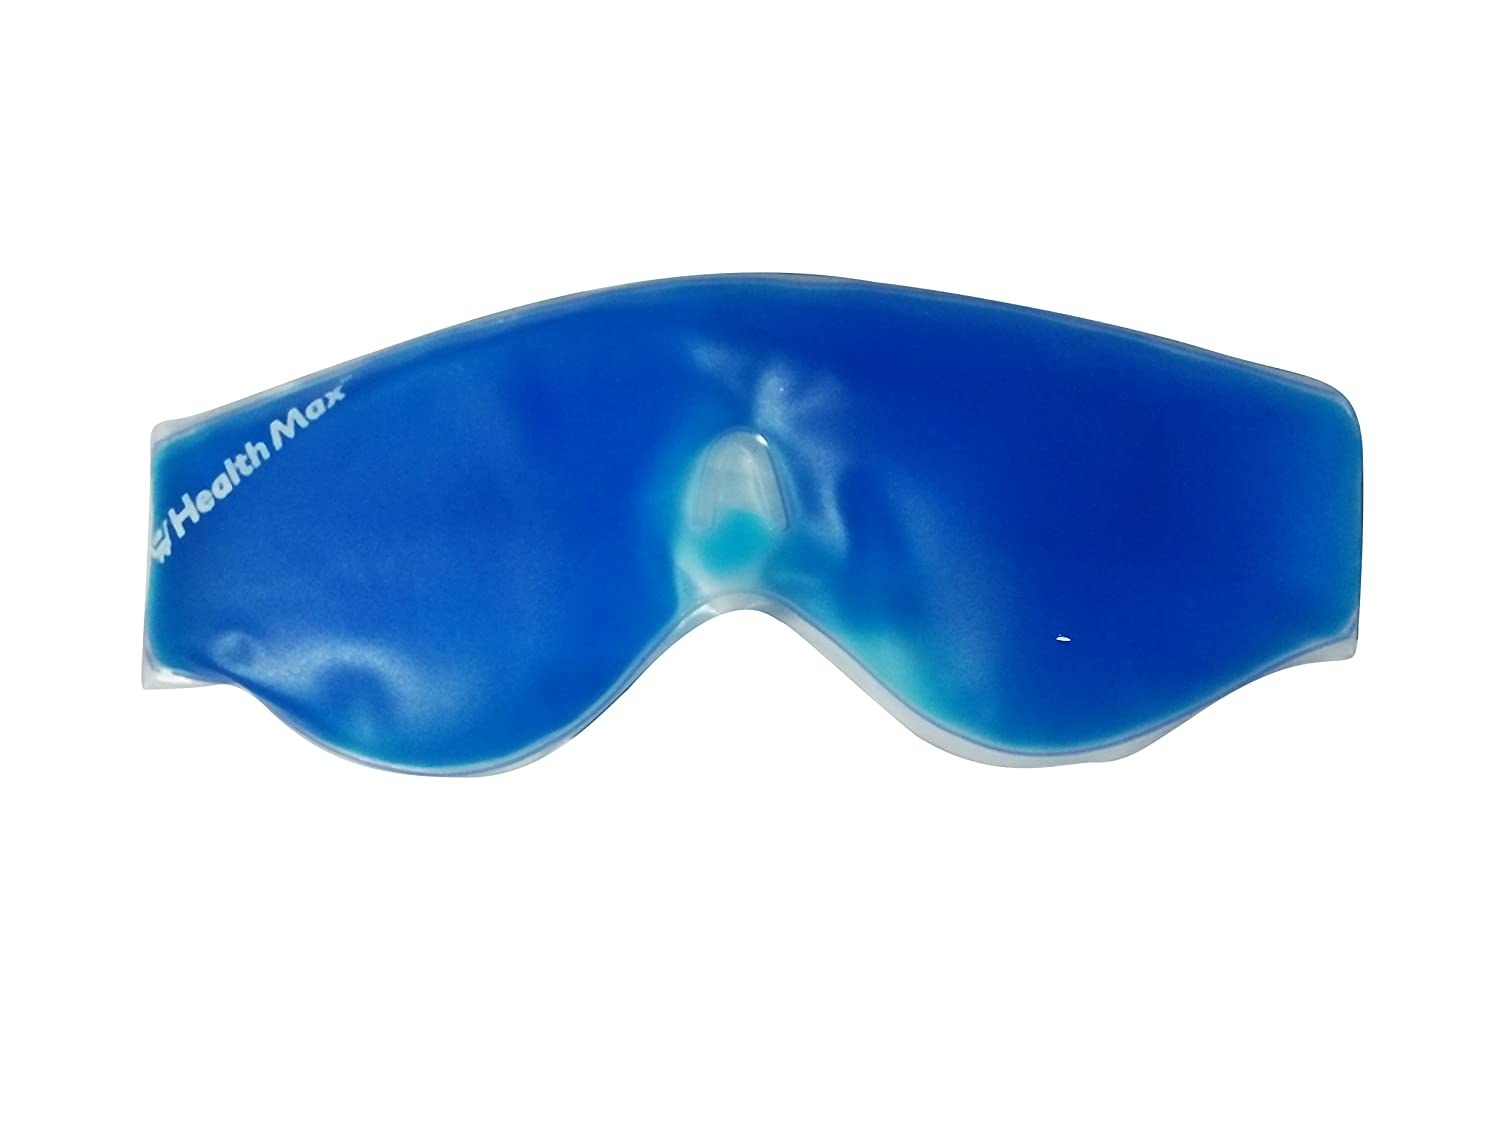 A blue gel eye mask